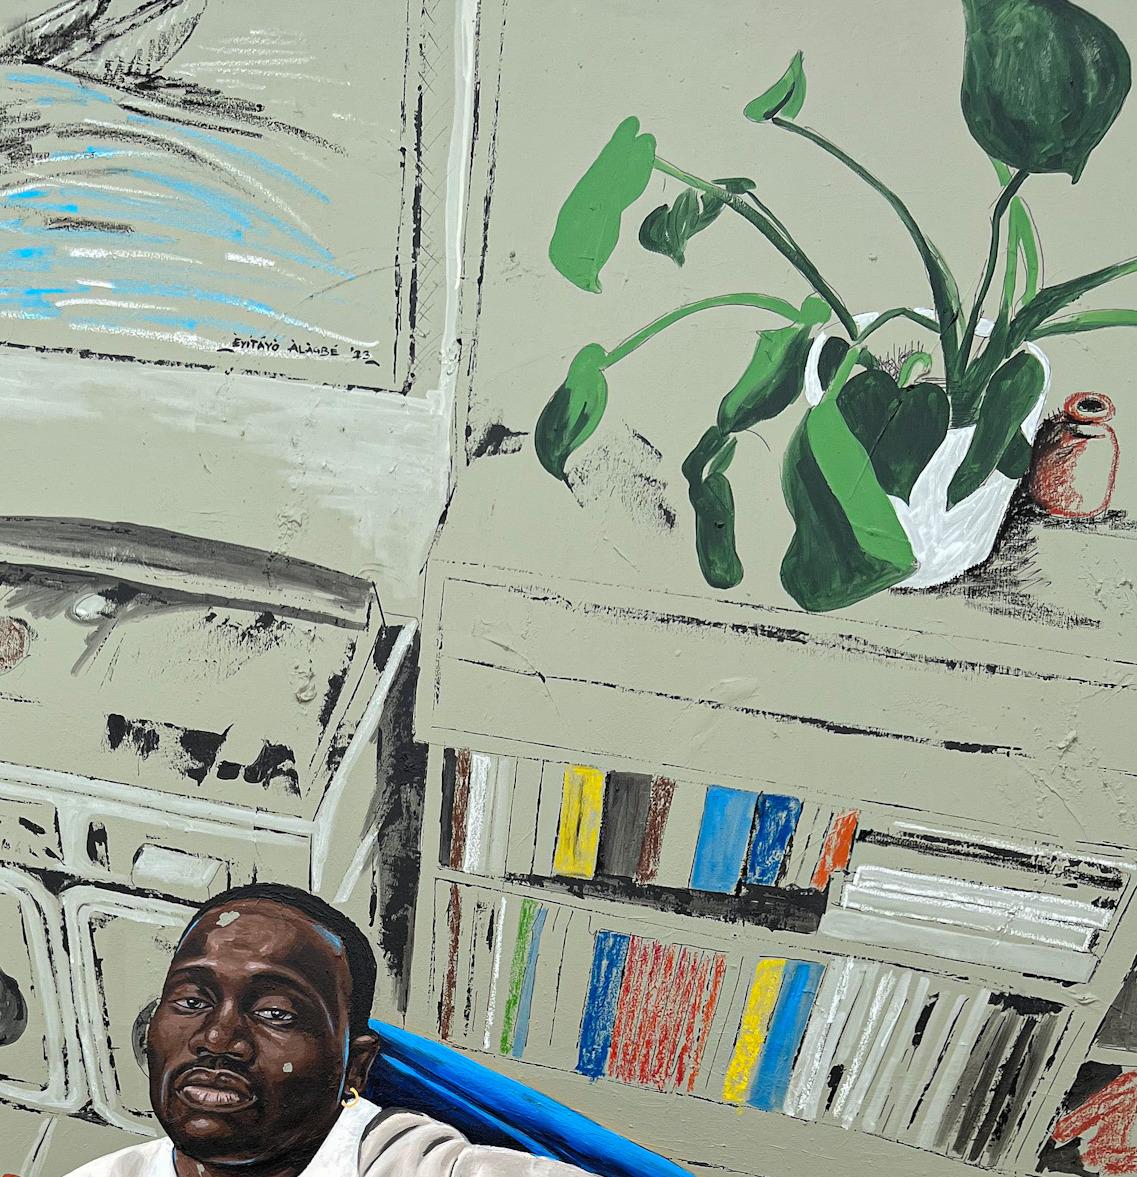 Das Kunstwerk zeigt einen Mann in einem Zustand der Entspannung, umgeben von einer ruhigen Wohnzimmeratmosphäre. Die sanften, kühlen Töne des blauen Sofas bilden einen ruhigen Hintergrund und kontrastieren mit dem weißen Oberteil, das die Hauptfigur